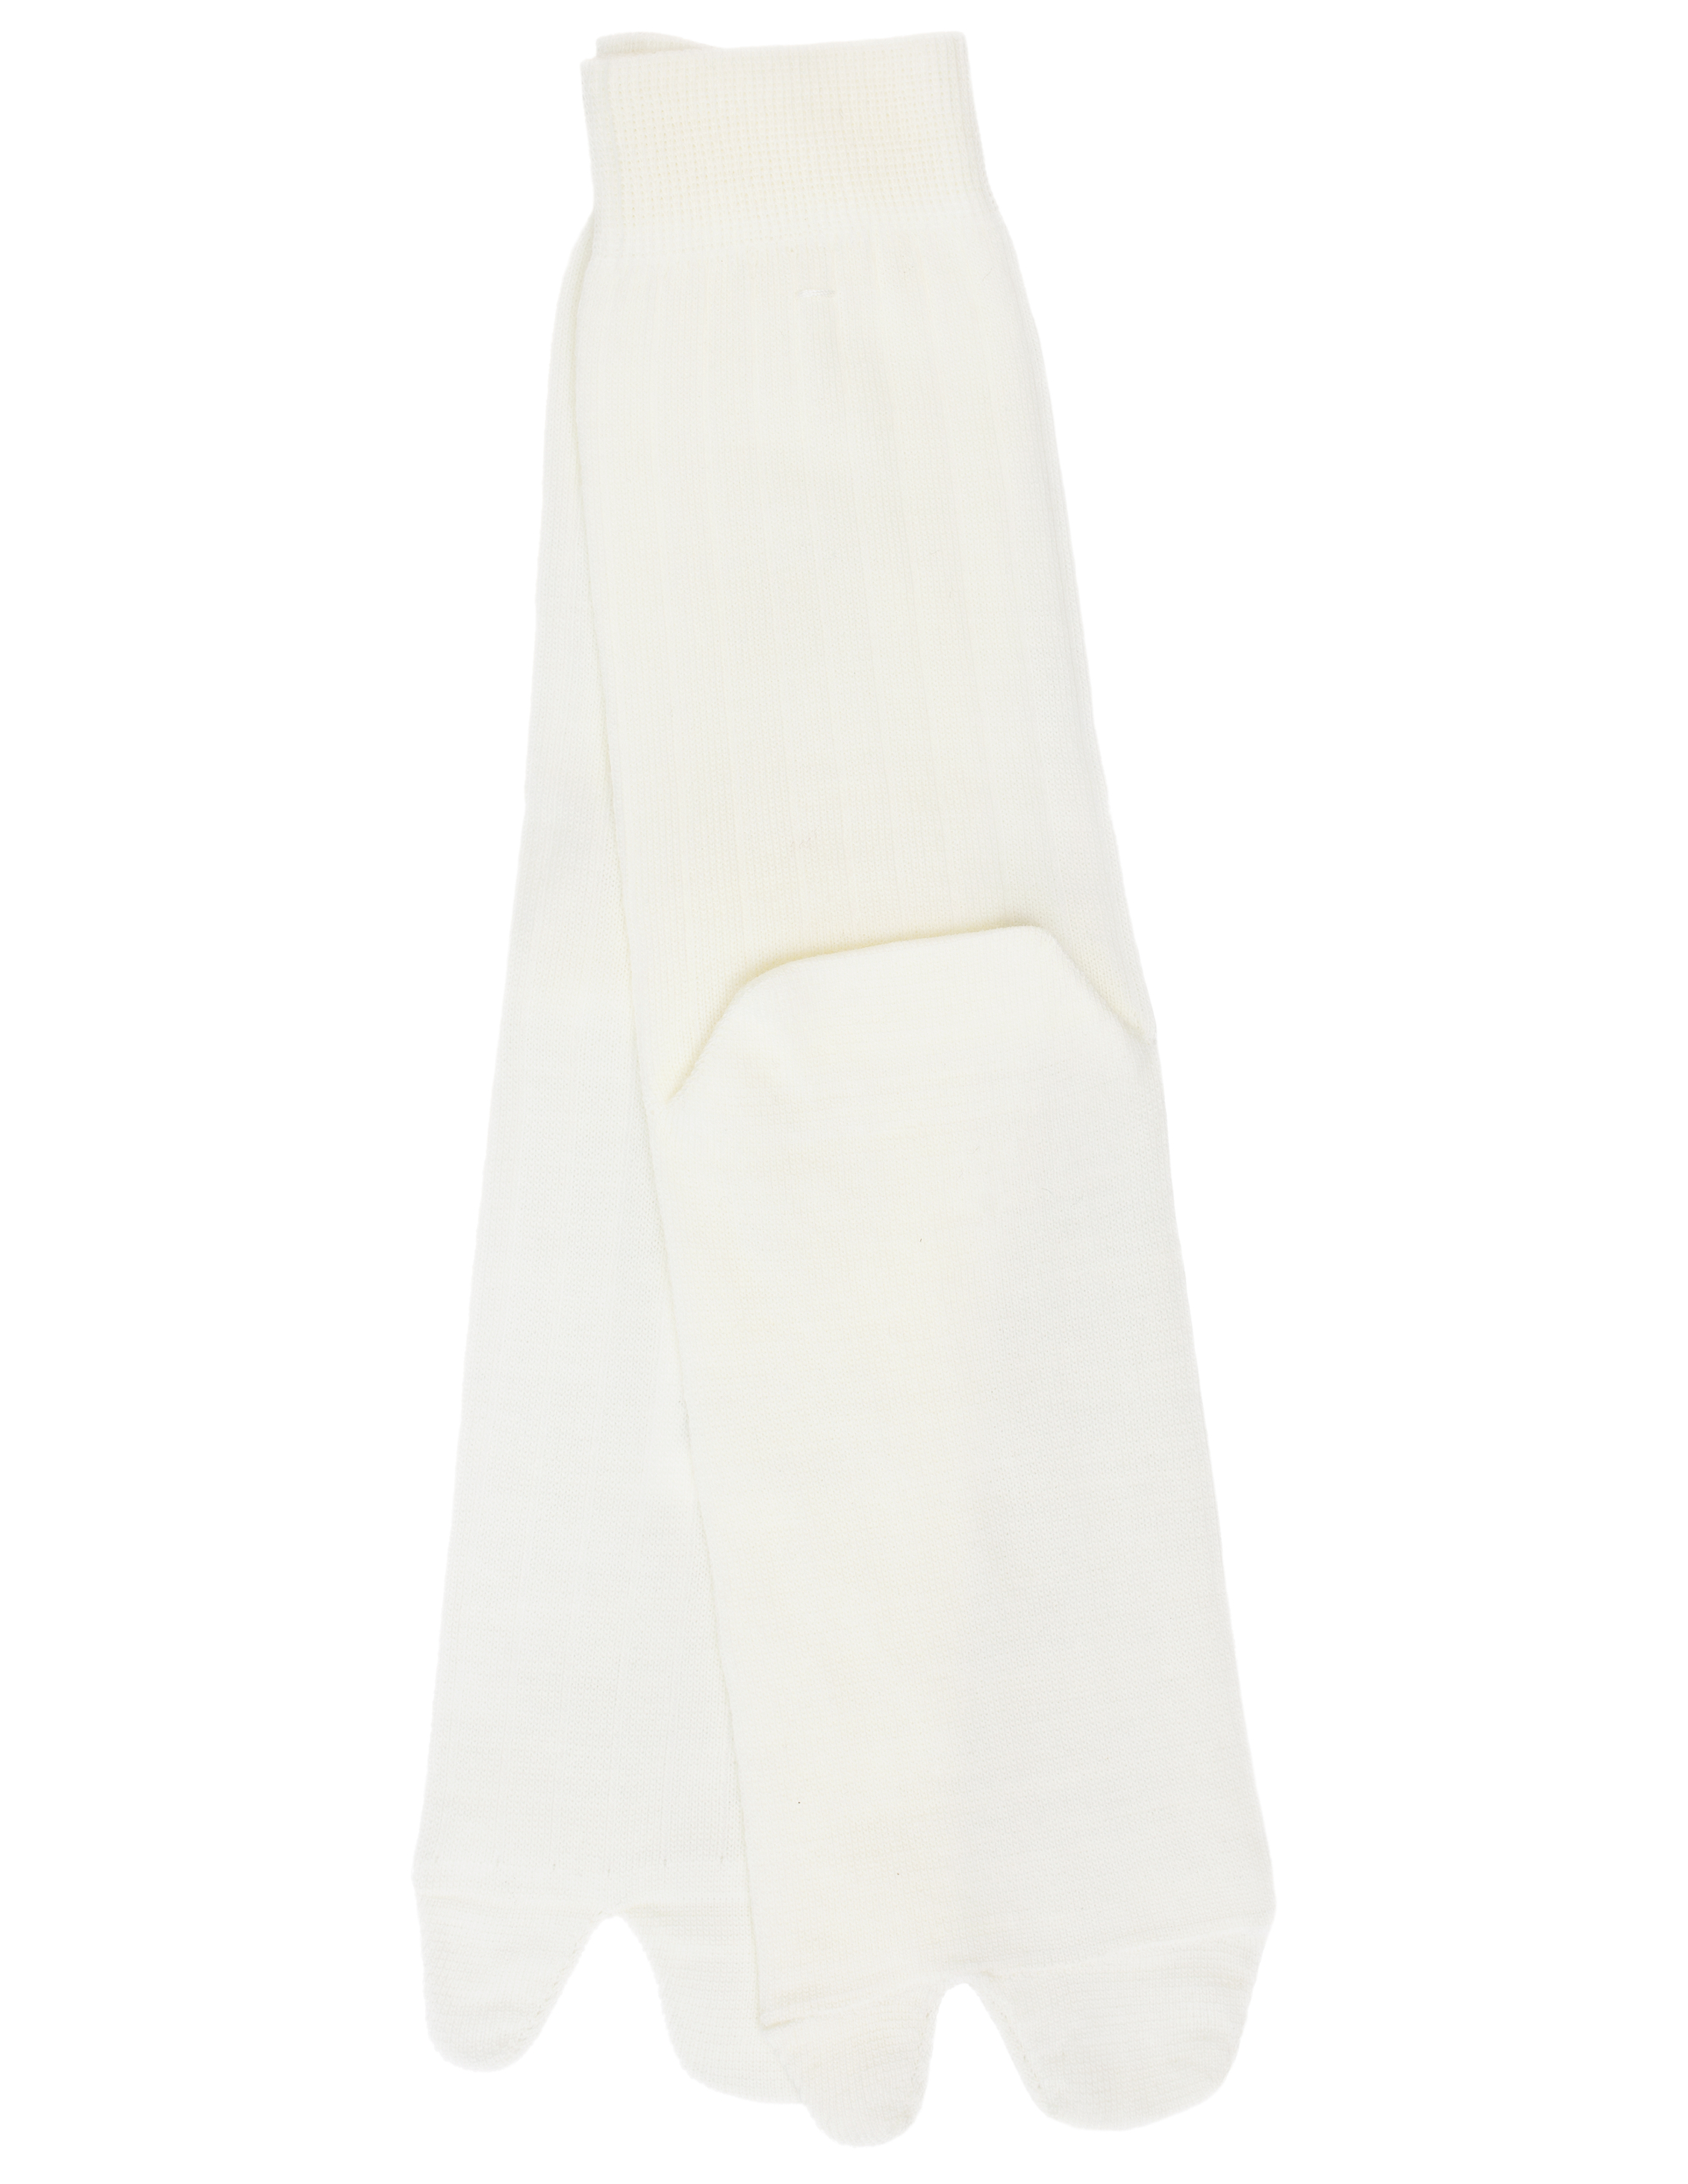 Белые носки Tabi Maison Margiela SI0TL0001/S17867/102, размер M